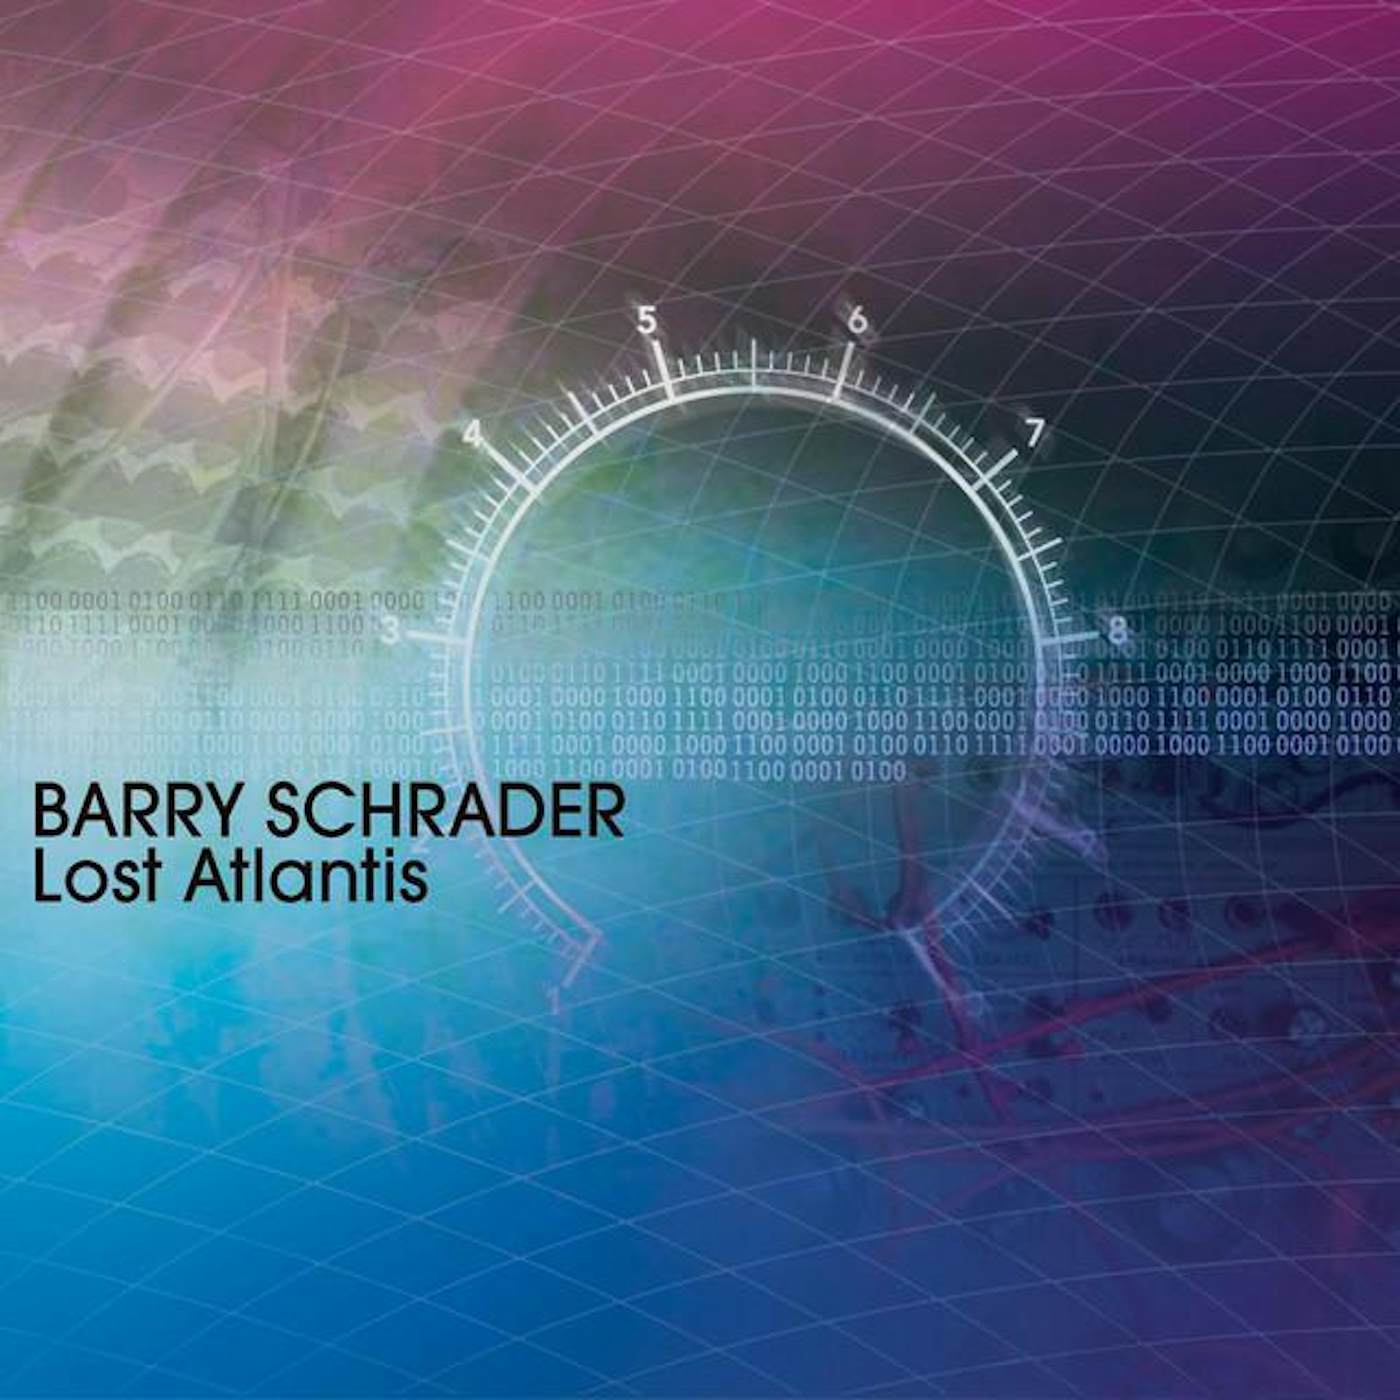 Barry Schrader